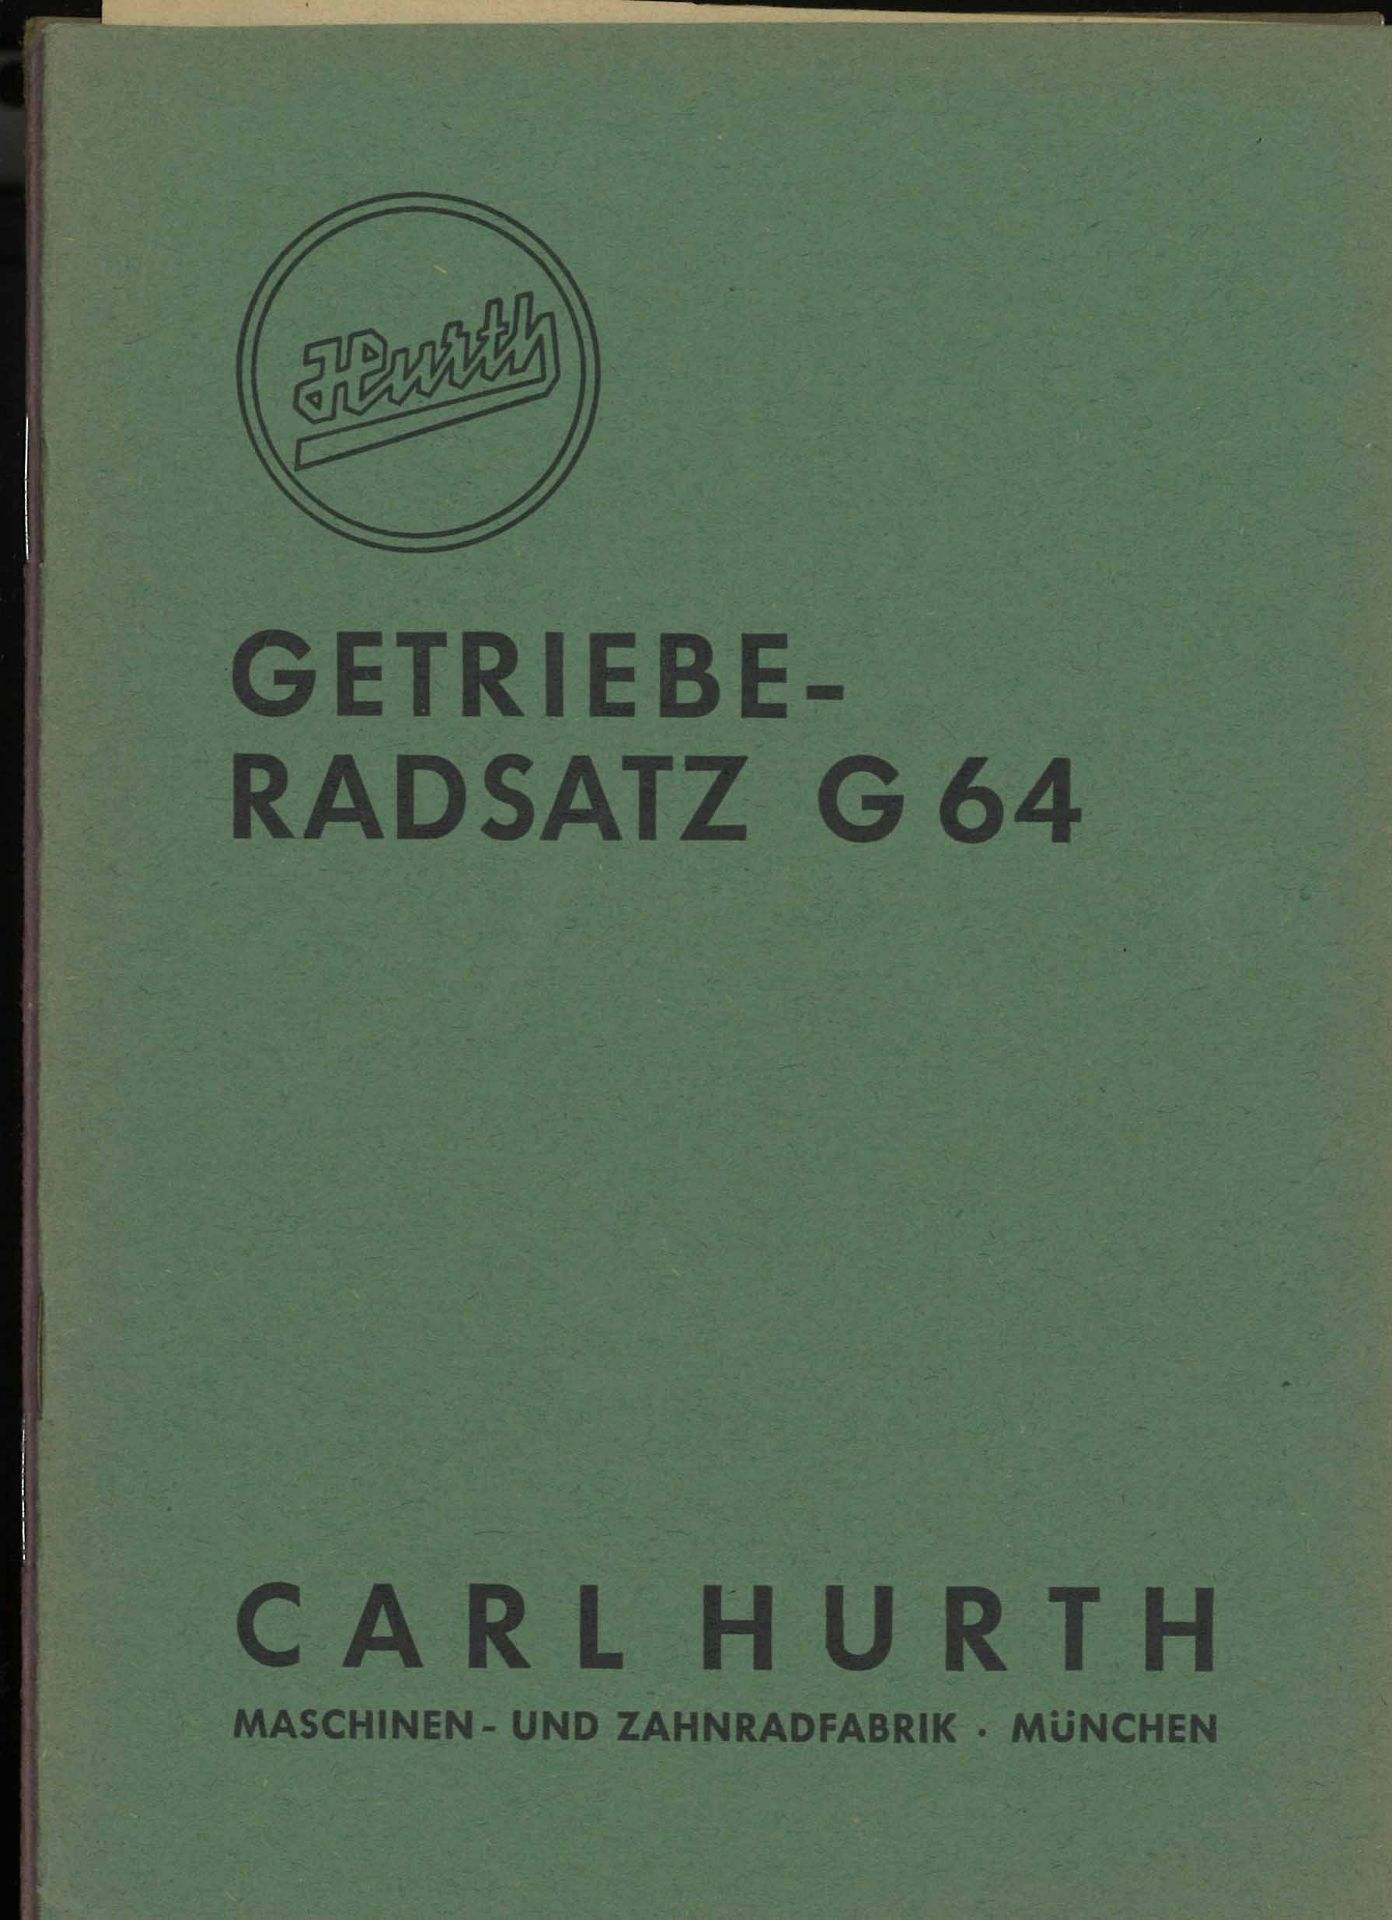 HURTH G64, G68 sowie G77. Getriebe-Radsatz Bedienungsanleitung und Ersatzteilliste" , alle 3 Hefte